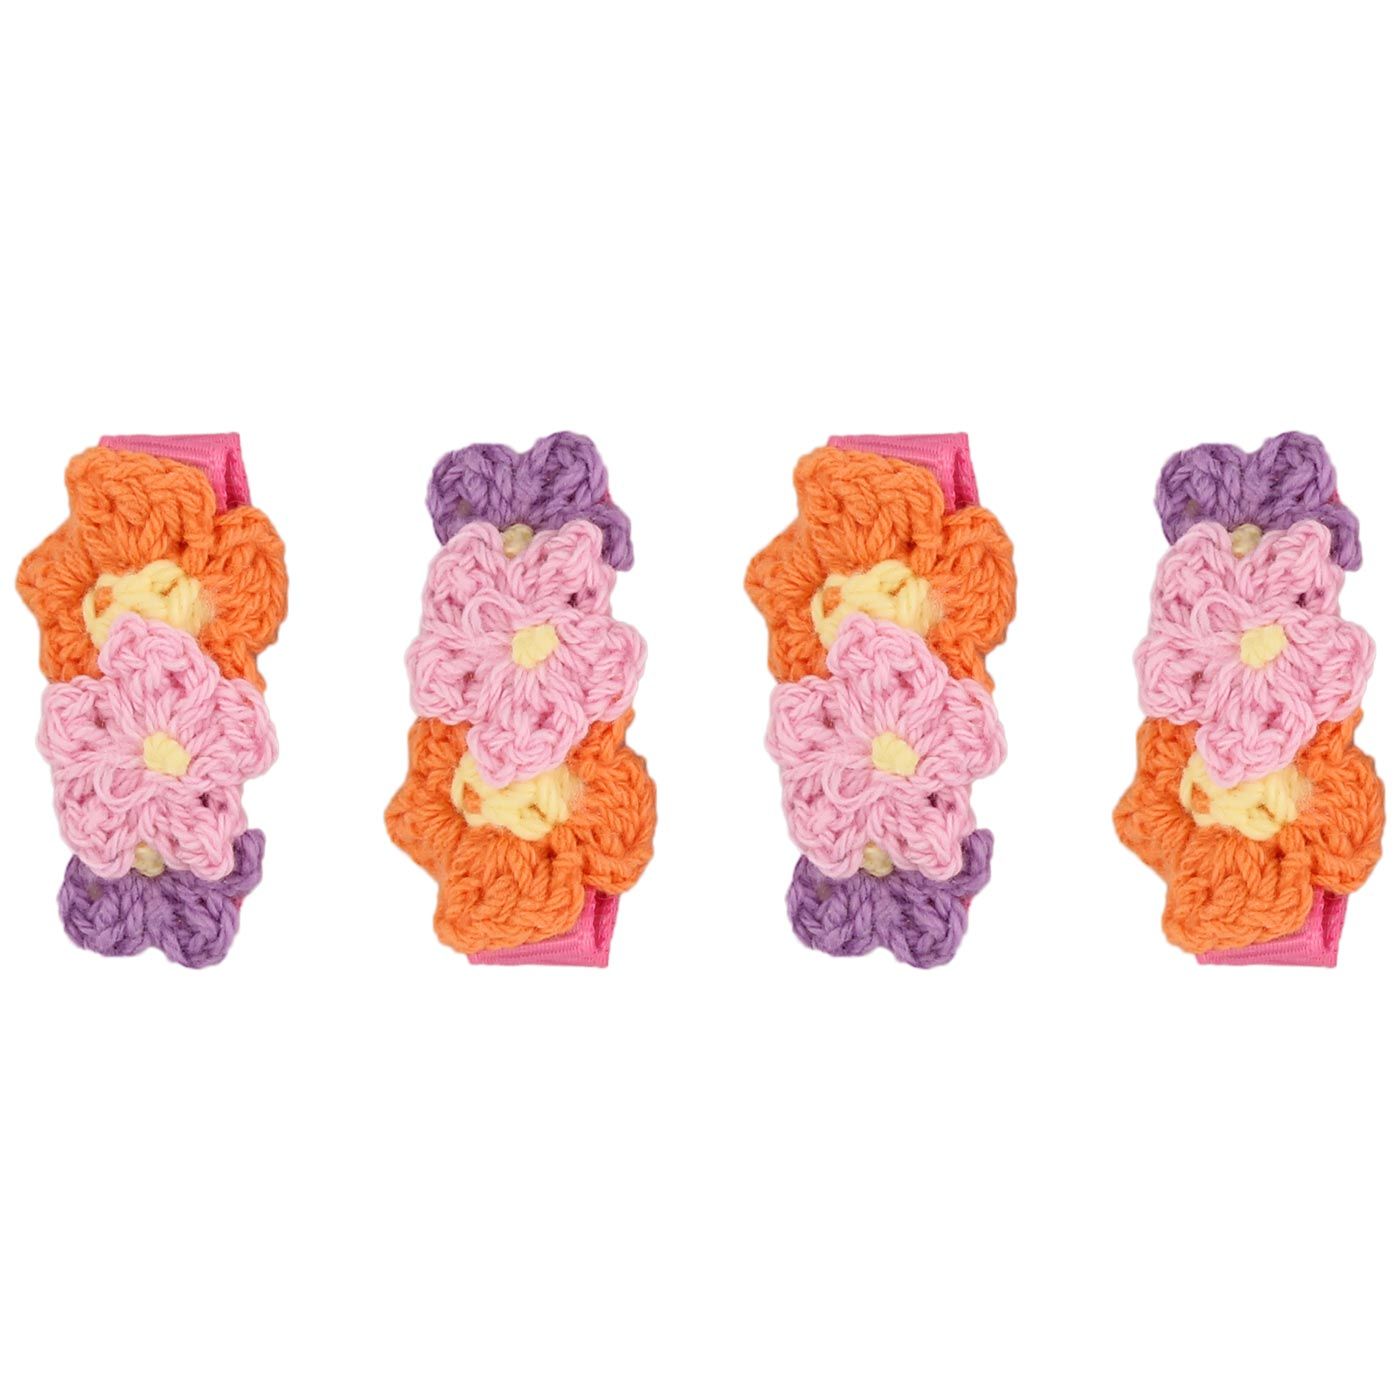 Bebecroc Crochet Flower Clips(2pcs)Orange+Pink+Lilac - 2